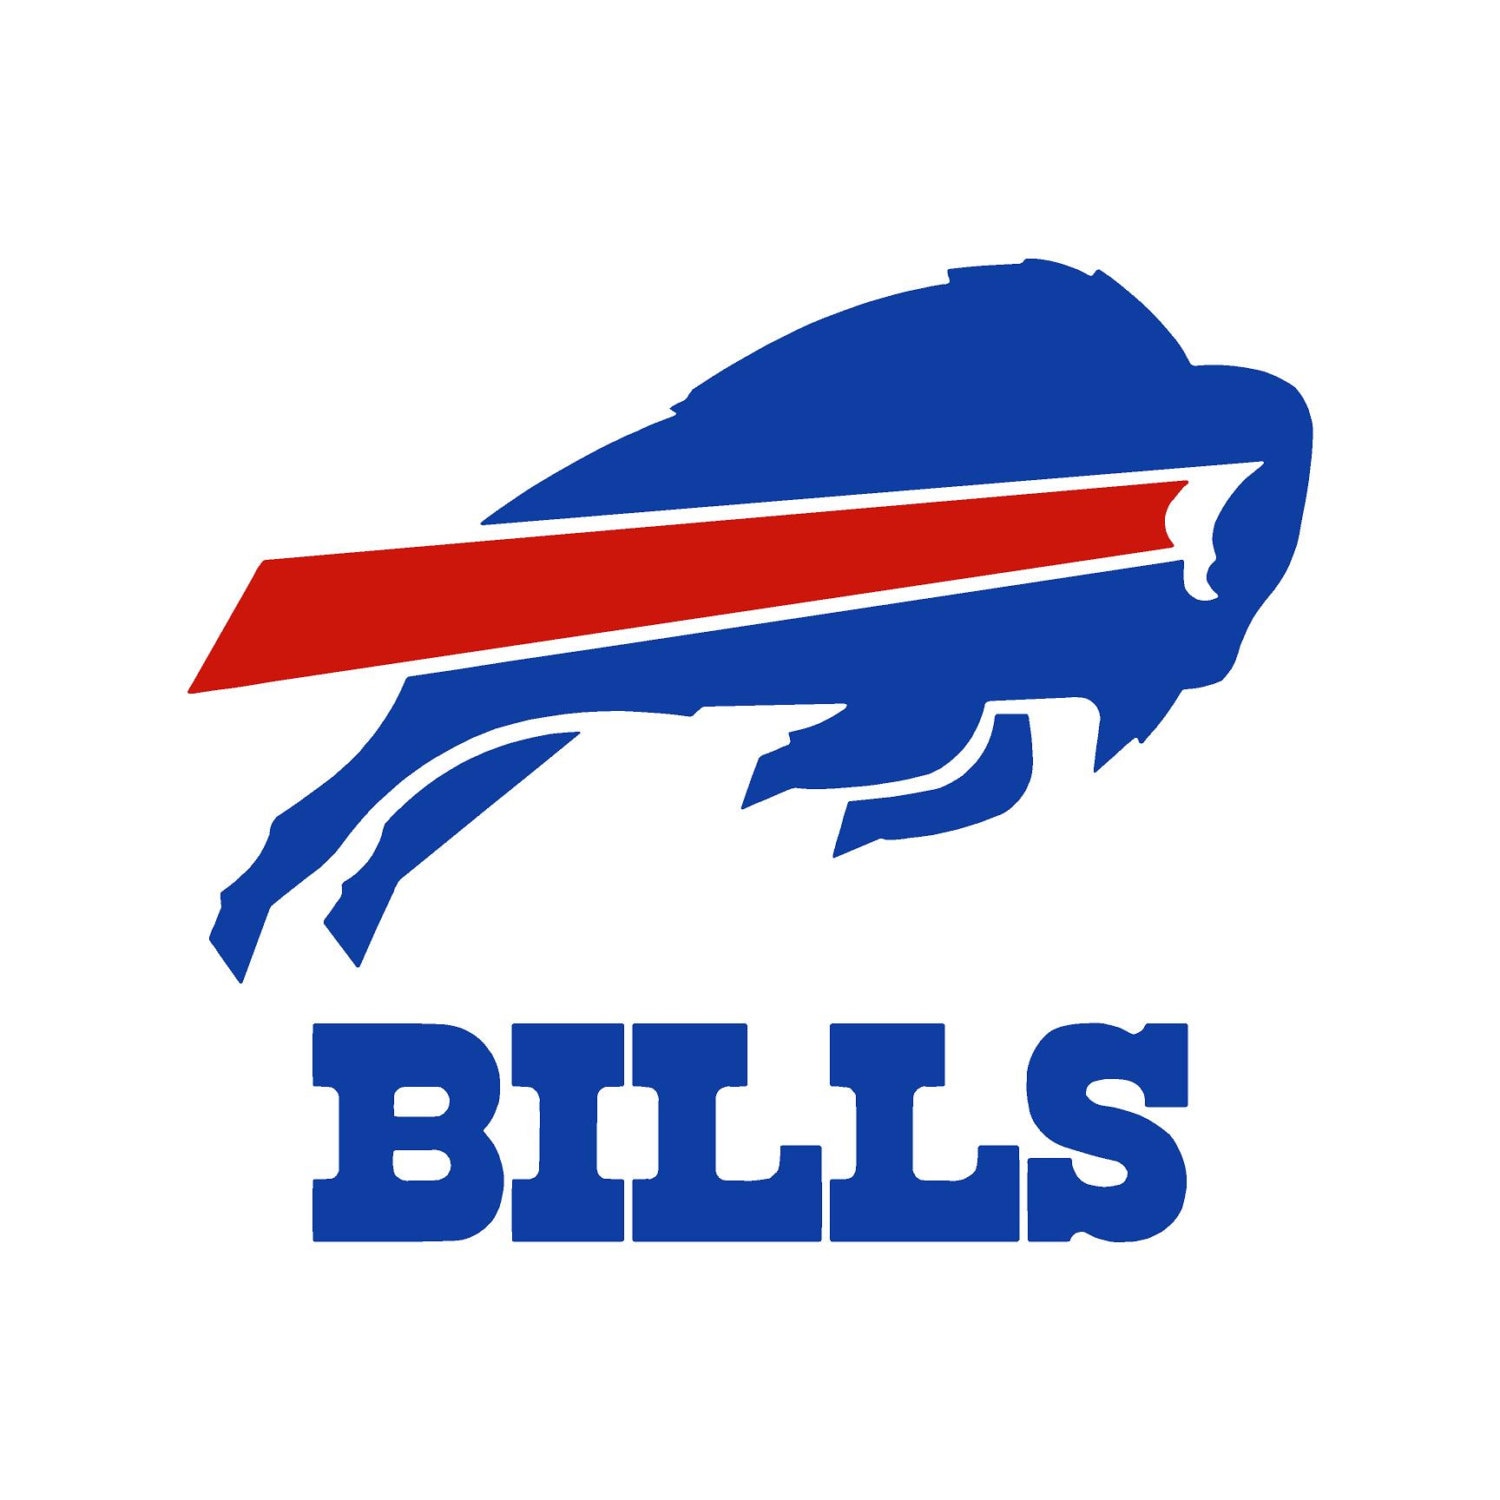 Printable Buffalo Bills Logo - Customize and Print